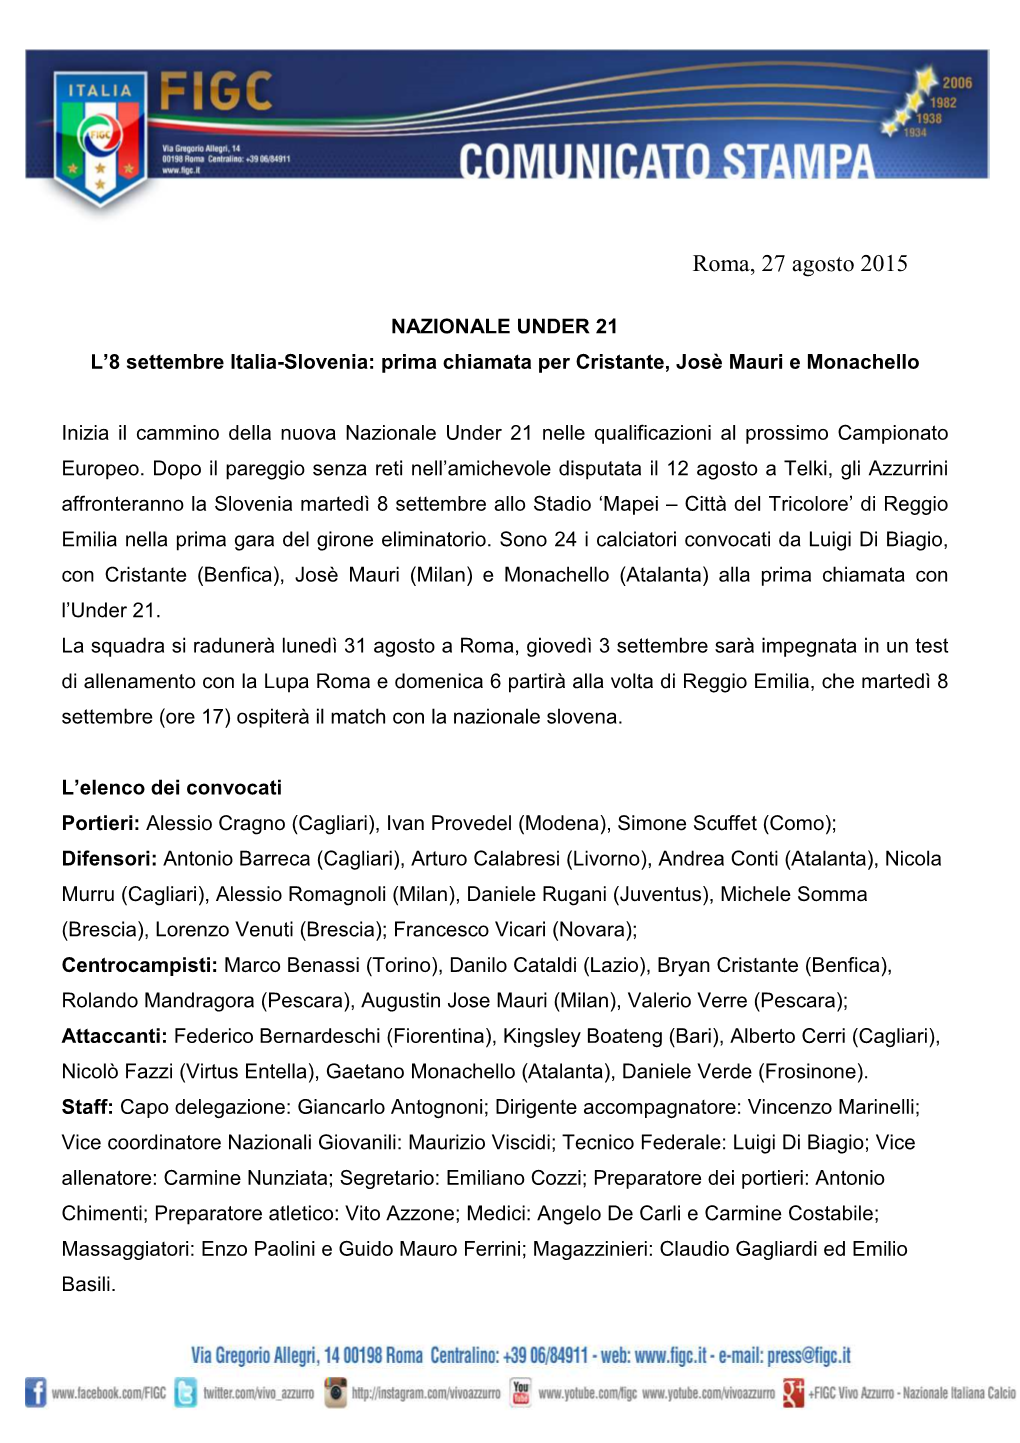 NAZIONALE UNDER 21 Convocati Per Italia-Slovenia